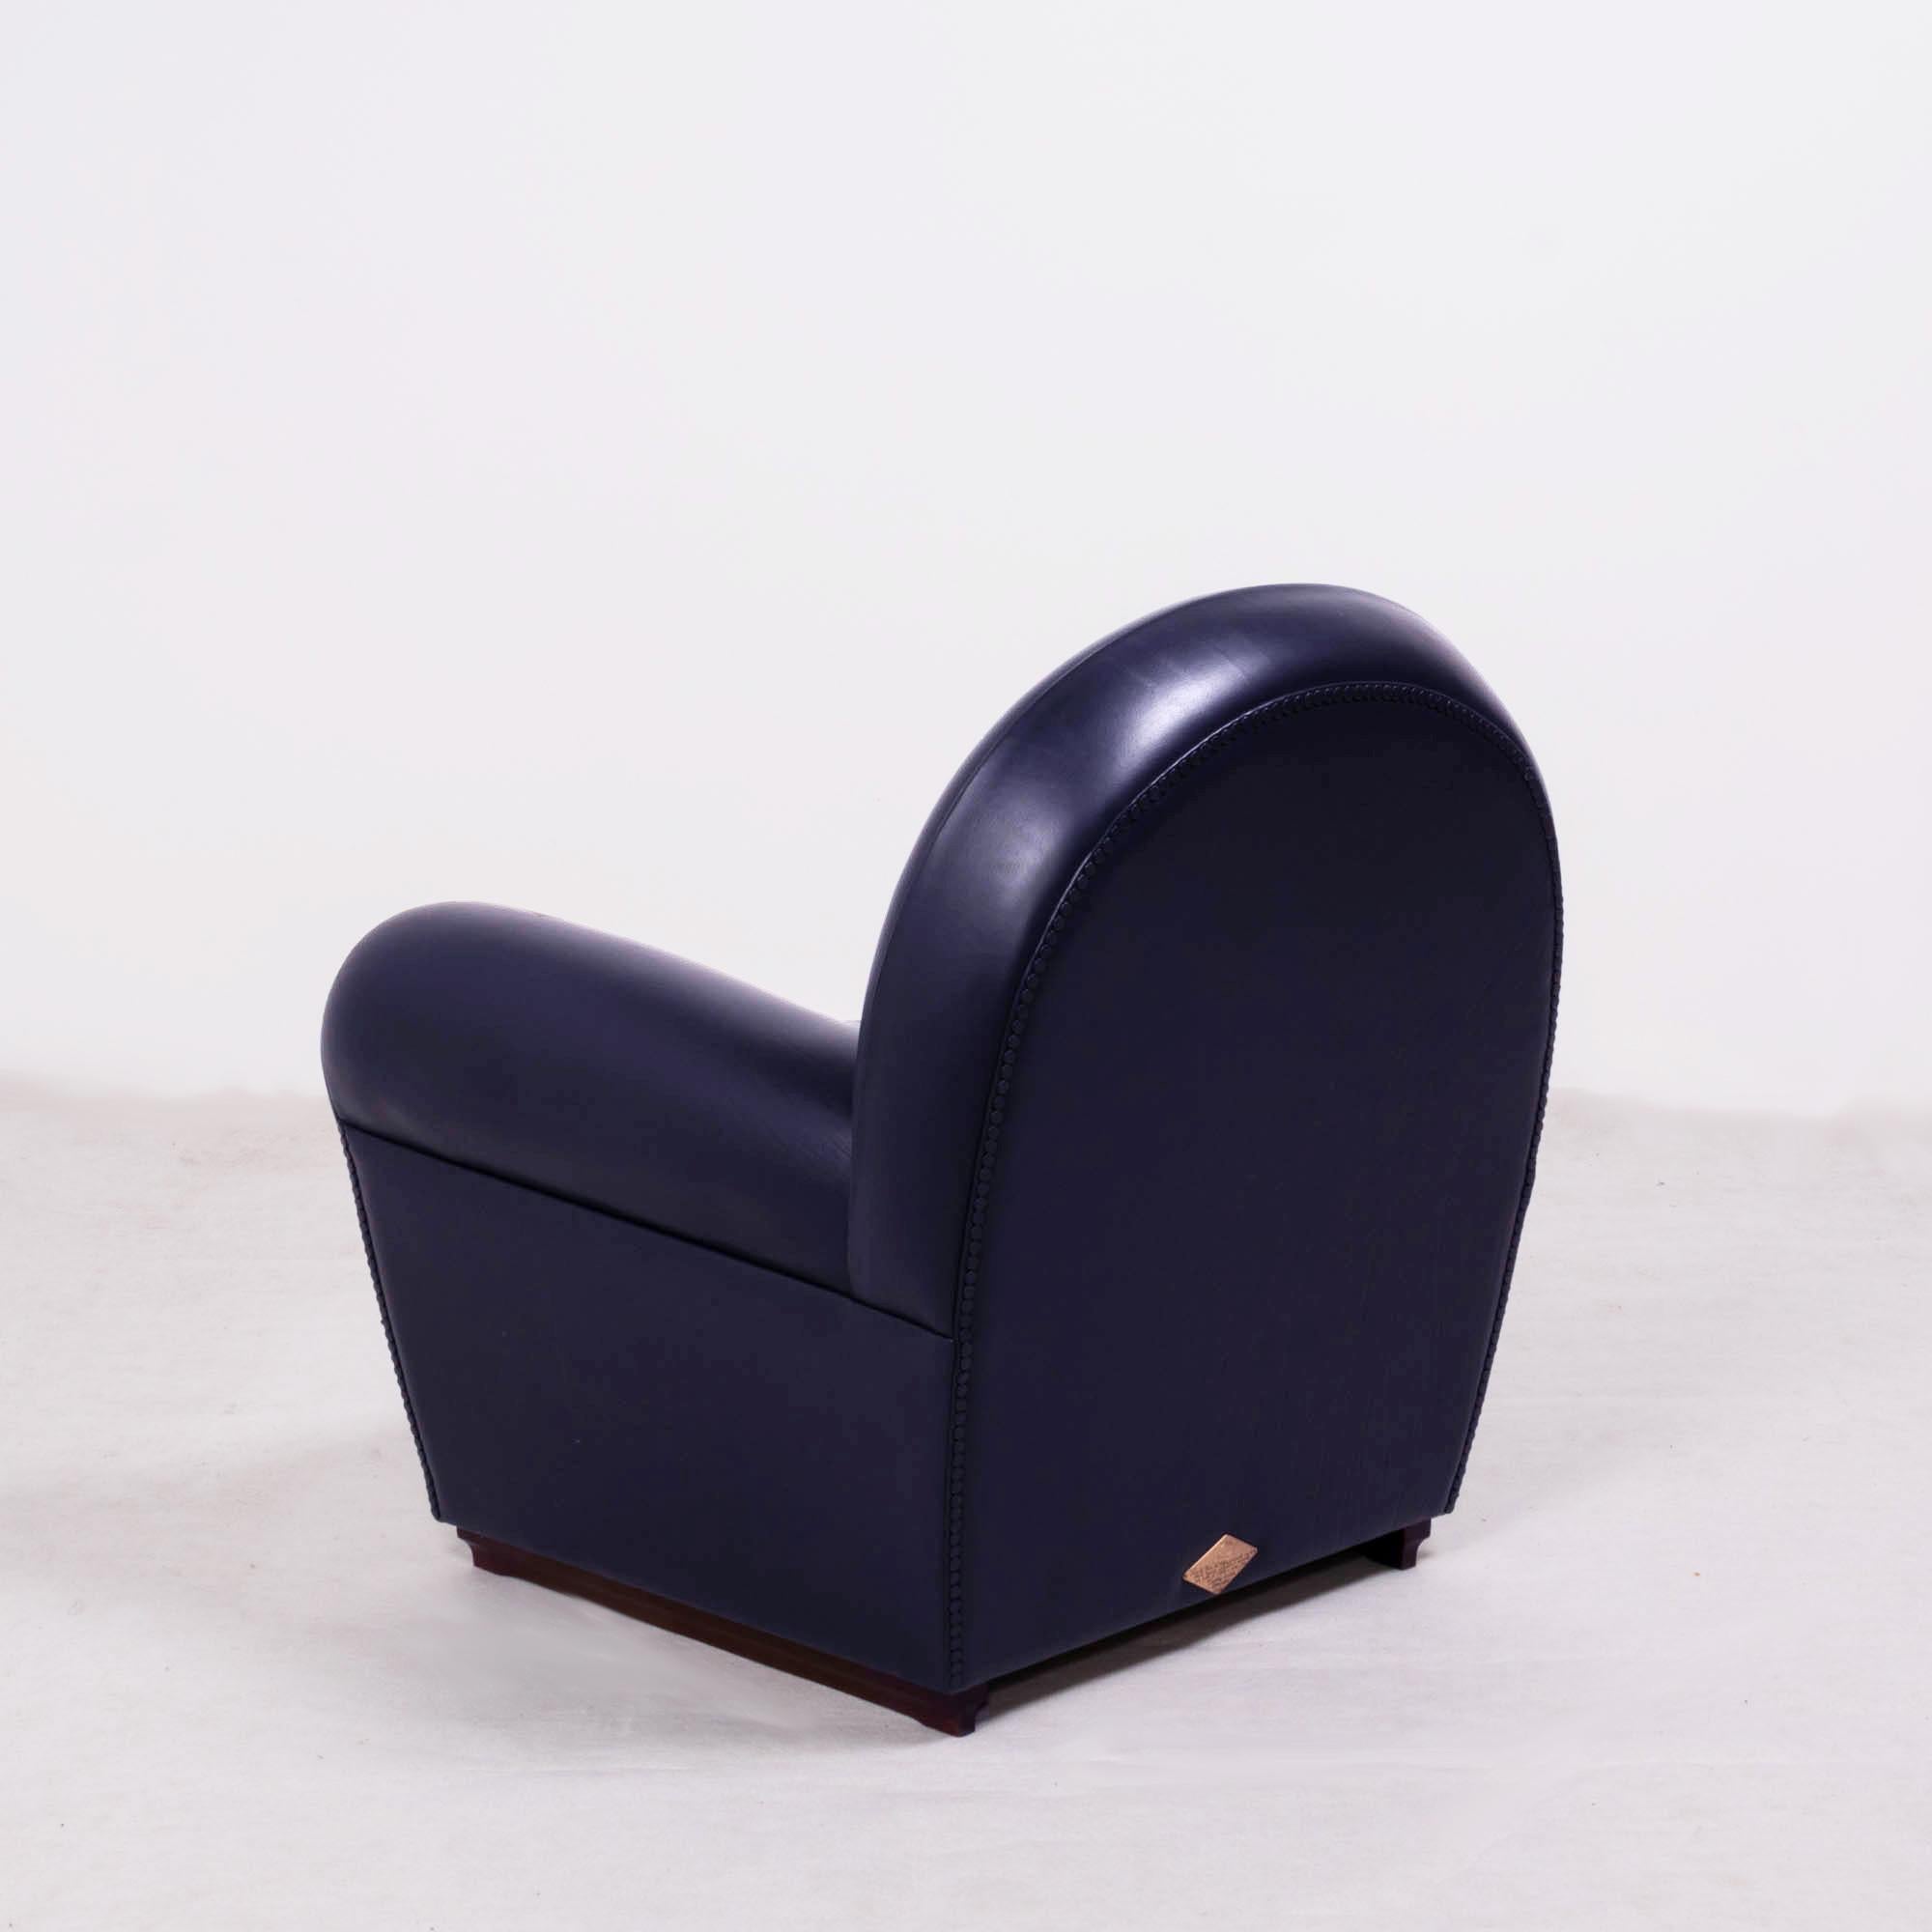 Poltrona Frau, Art Deco style Vanity Fair Black Leather Sofa and armchairs set 4